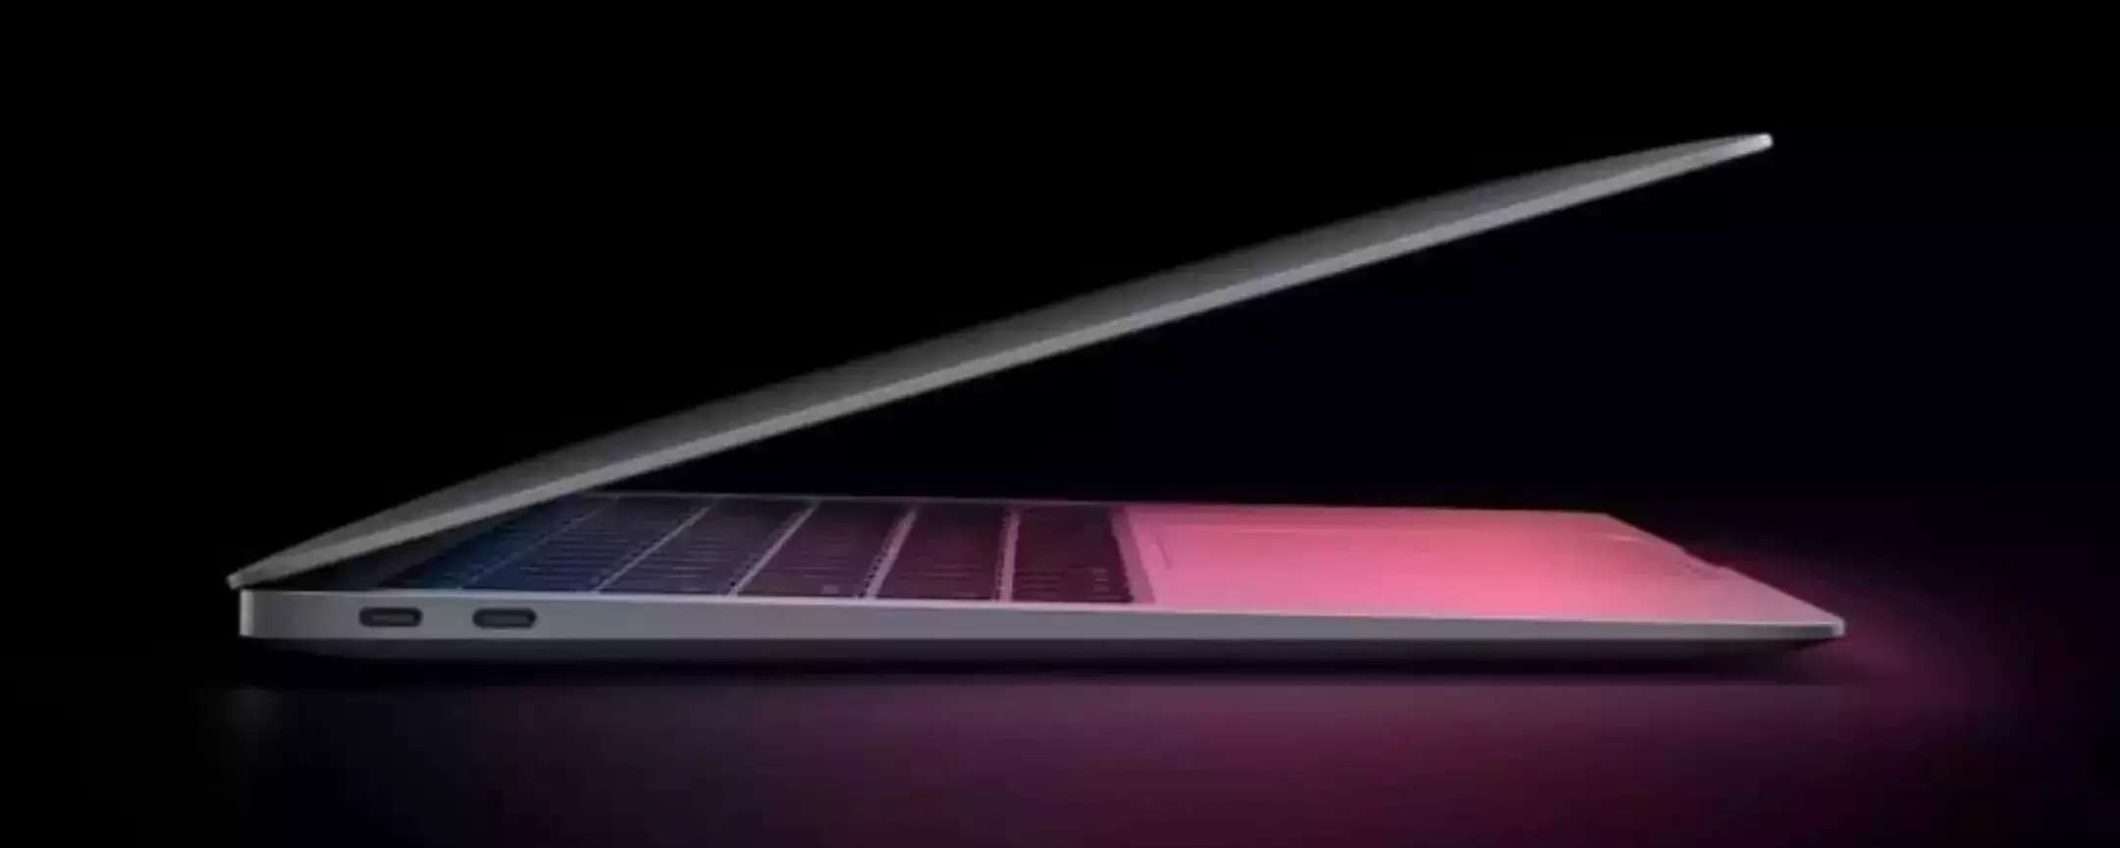 MacBook Air M1 in offerta a 791€: è il laptop da comprare oggi (anche a rate)